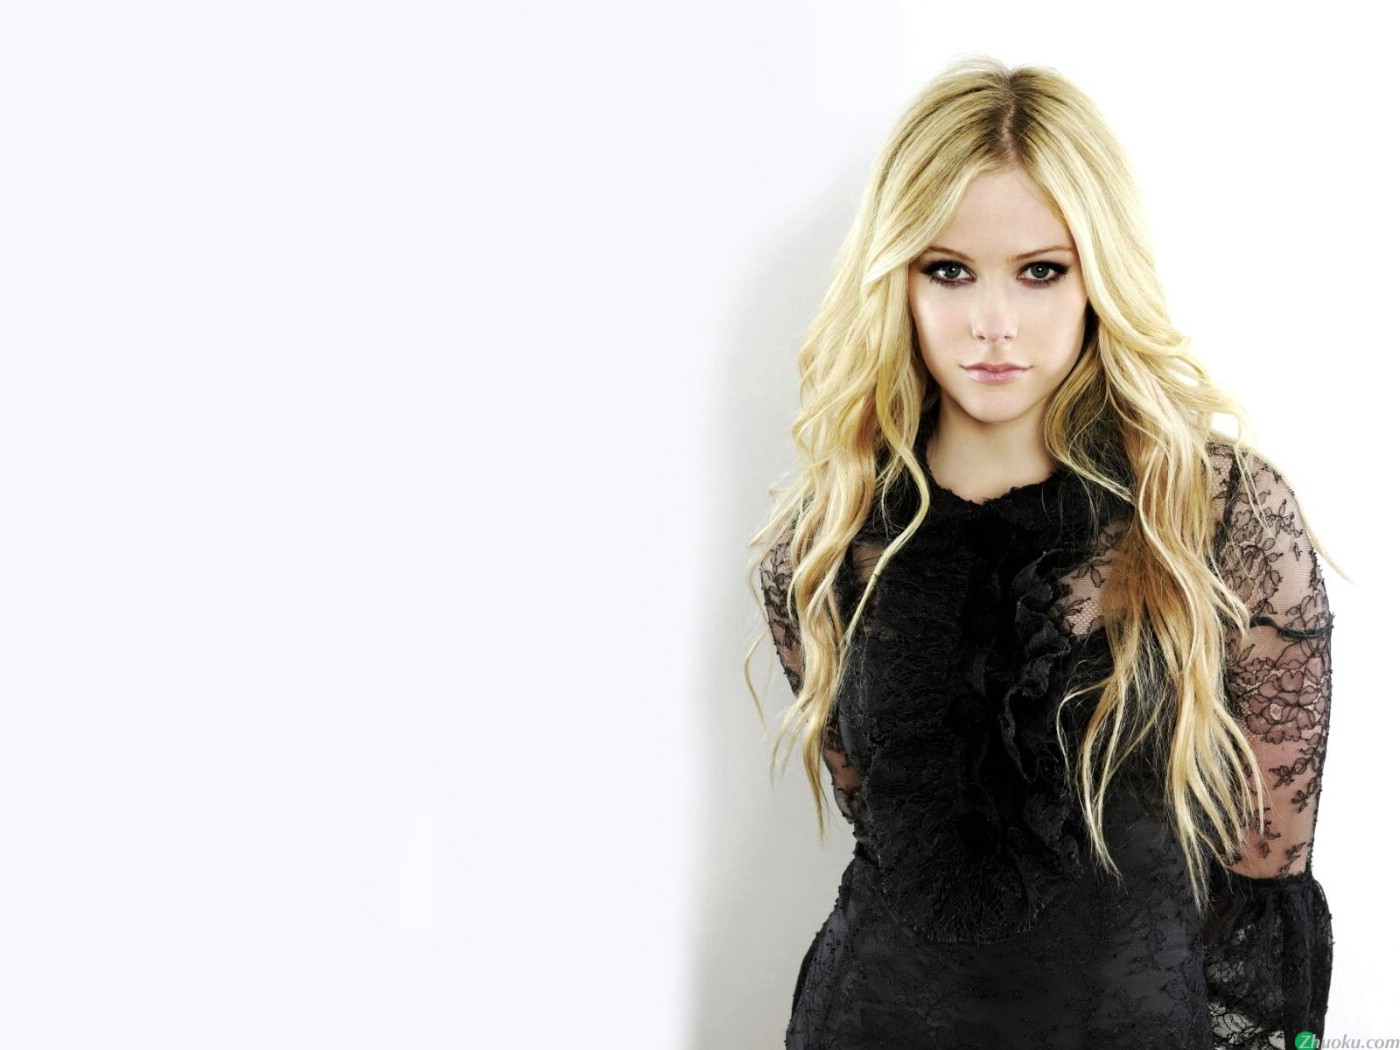 壁纸1400x1050艾薇儿 Avril Lavigne 壁纸3壁纸 艾薇儿 Avril Lavigne壁纸 艾薇儿 Avril Lavigne图片 艾薇儿 Avril Lavigne素材 明星壁纸 明星图库 明星图片素材桌面壁纸